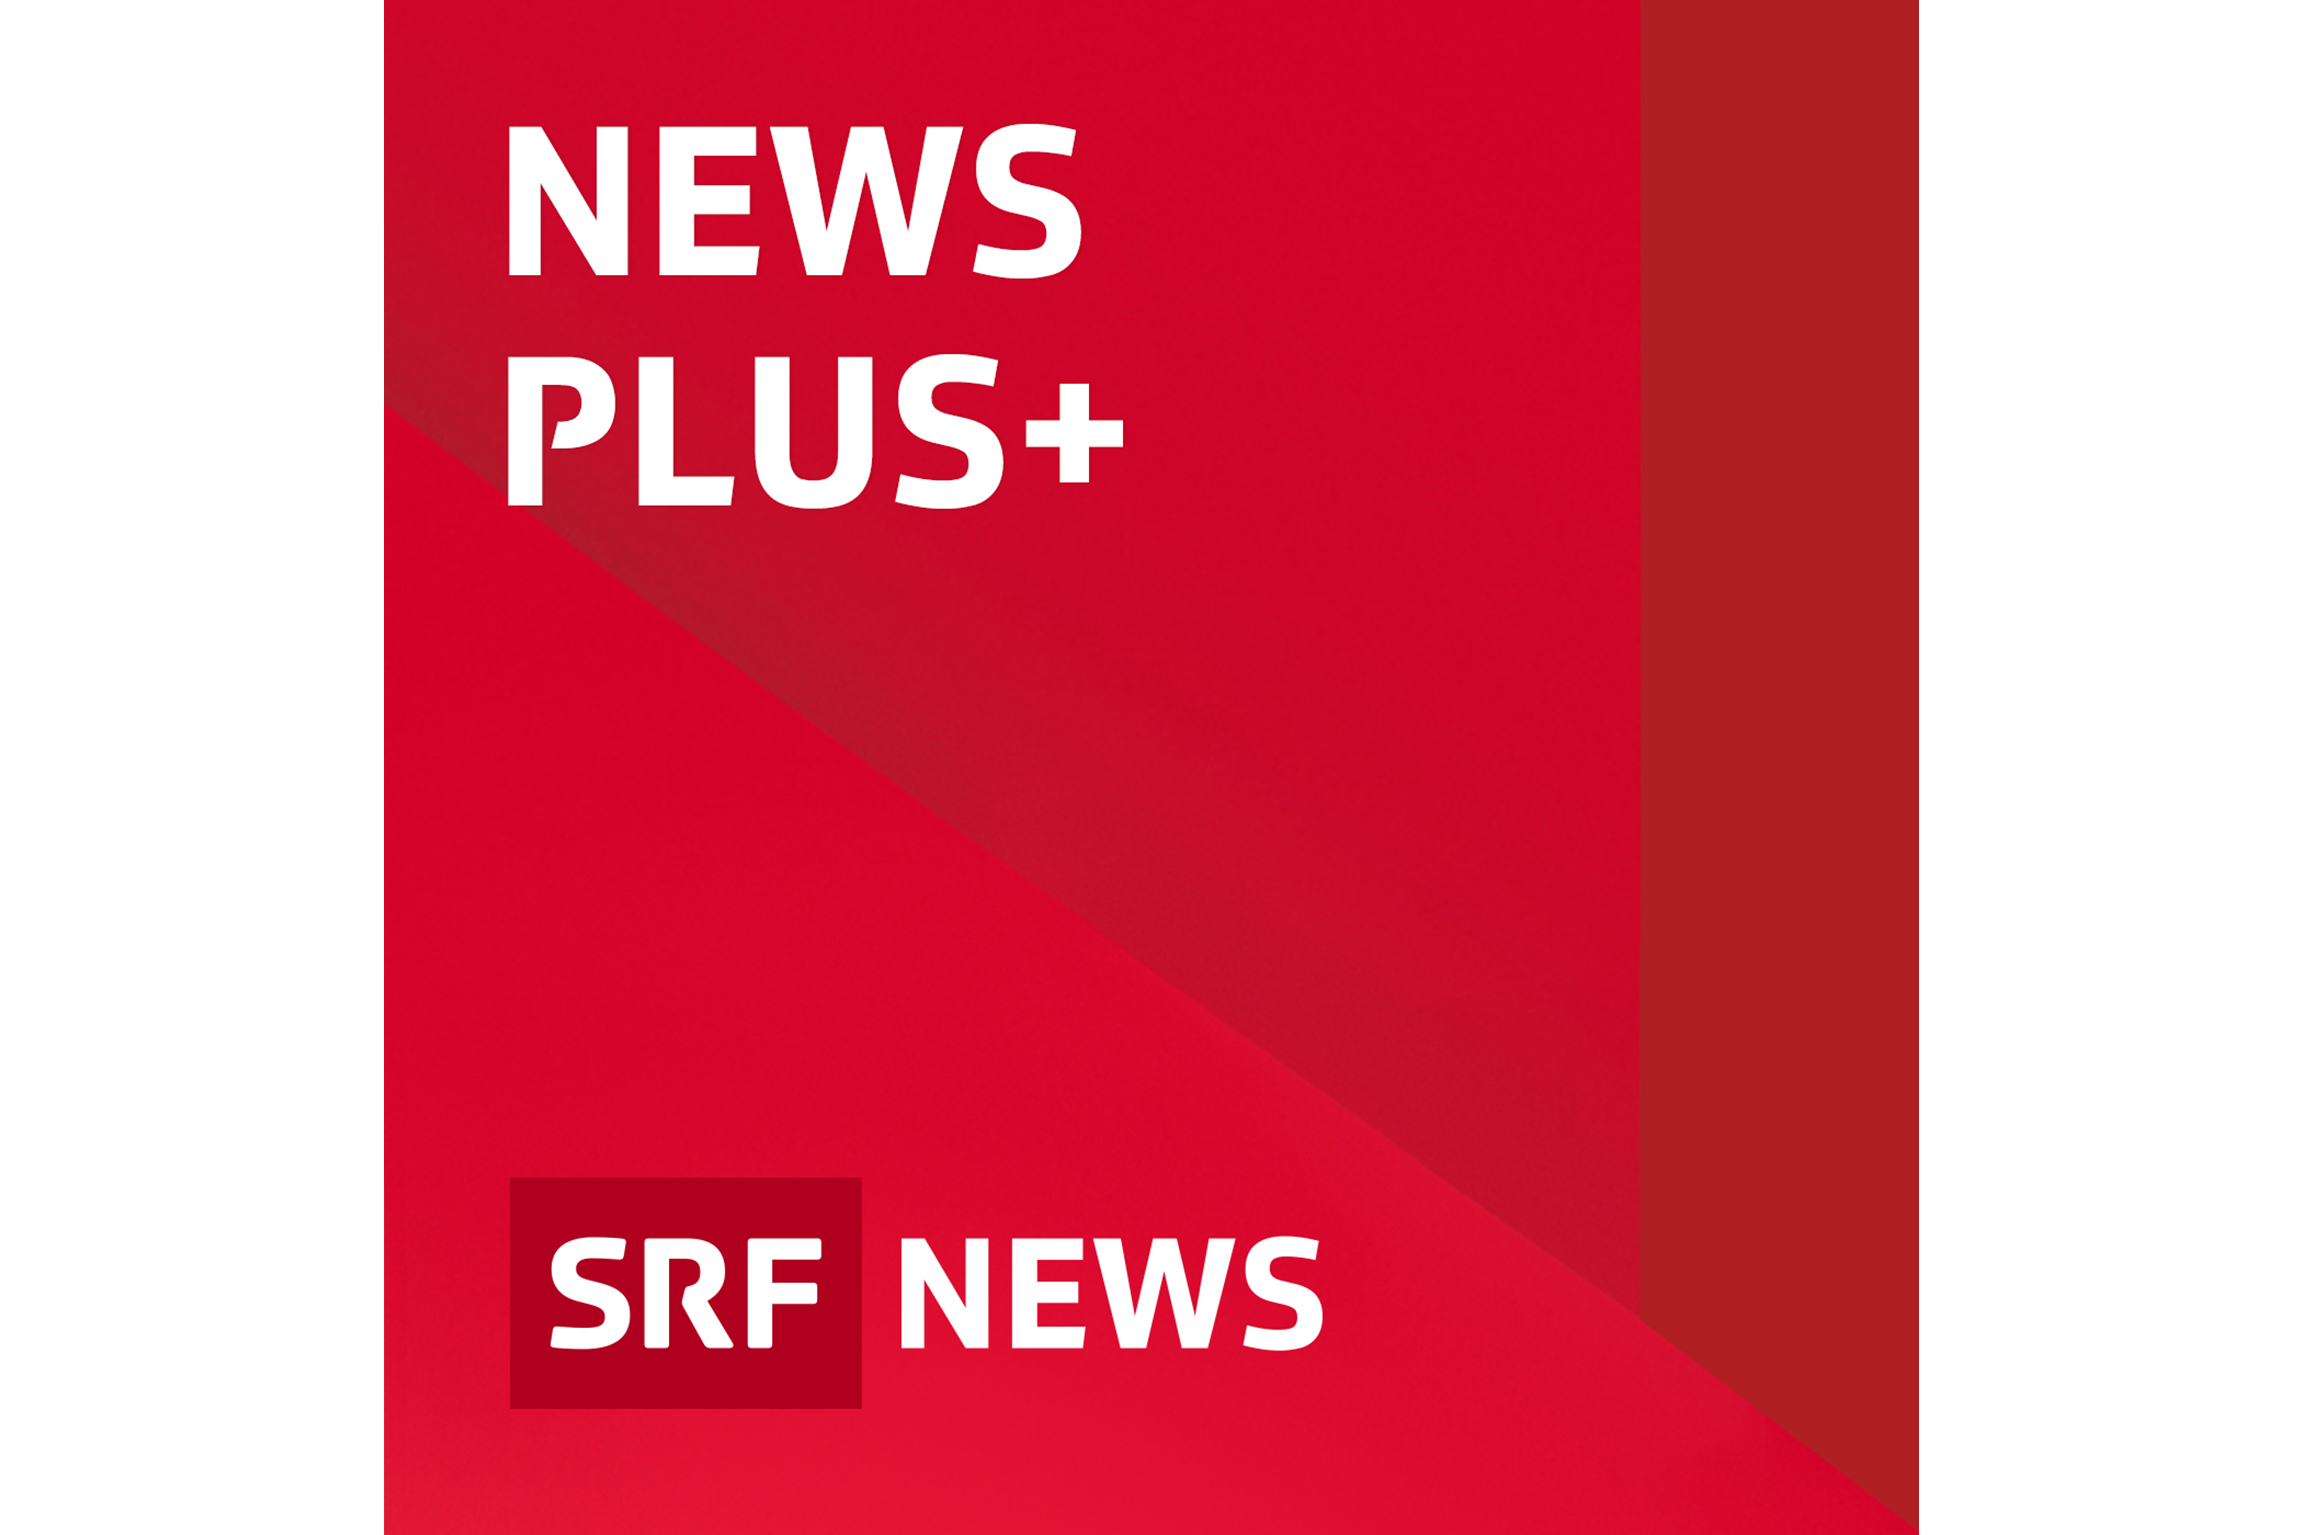 SRF News Plus Podcast Keyvisual2020 Copyright: SRF